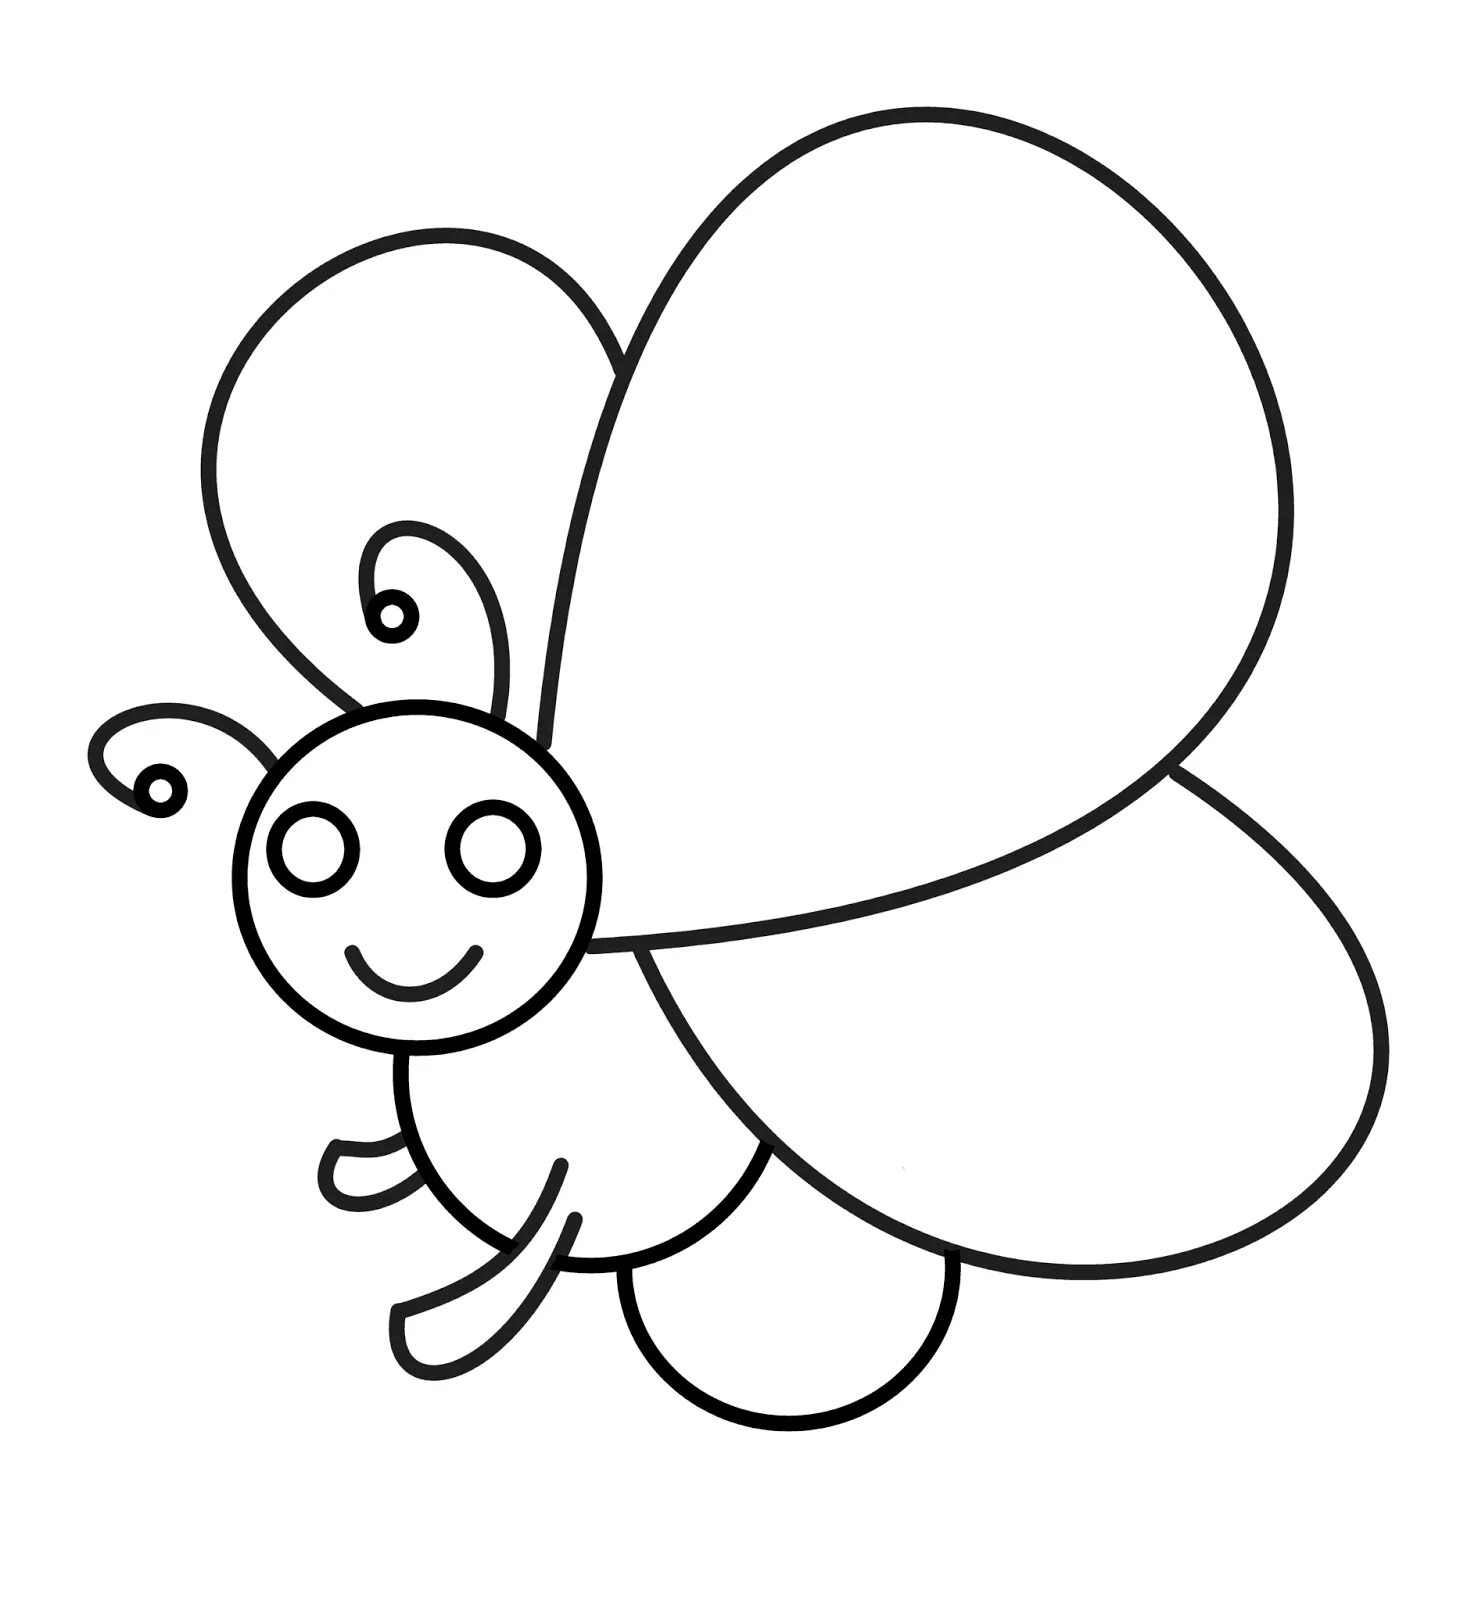 Простые рисунки для детей. Бабочка карандашом для детей. Бабочка для рисования детям. Раскраска бабочка для самых маленьких. Бабочка раскраска для детей 2-3 лет.